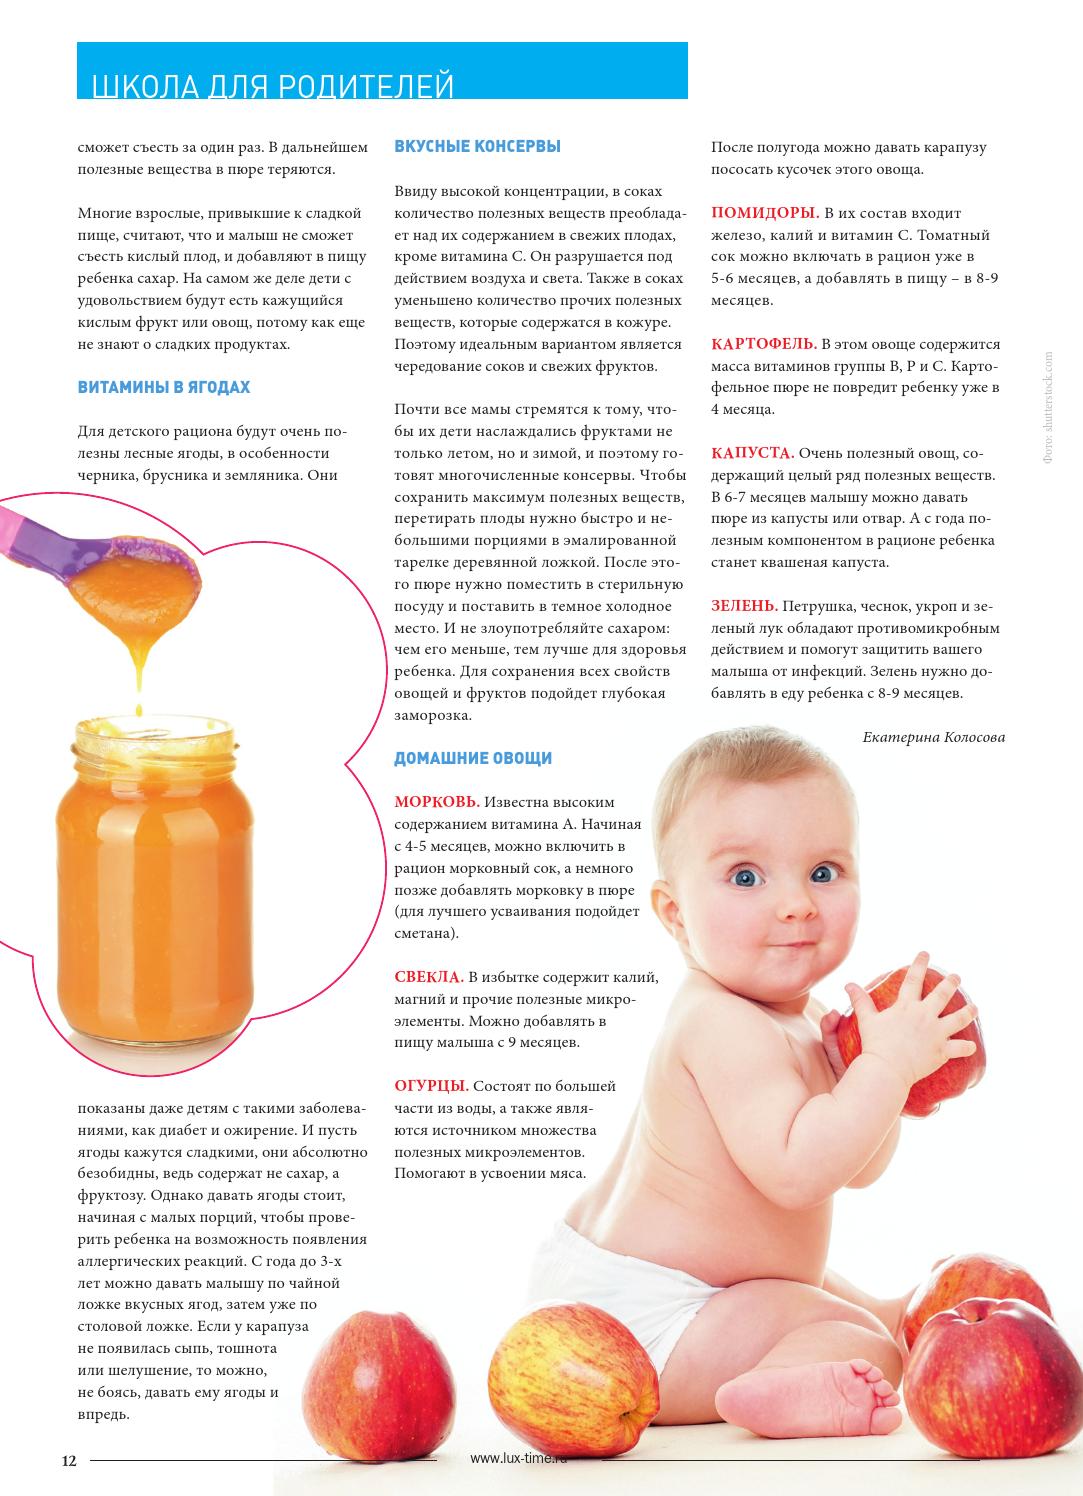 Со скольки месяцев можно детям давать сок? как и когда вводить соки в рацион малыша?